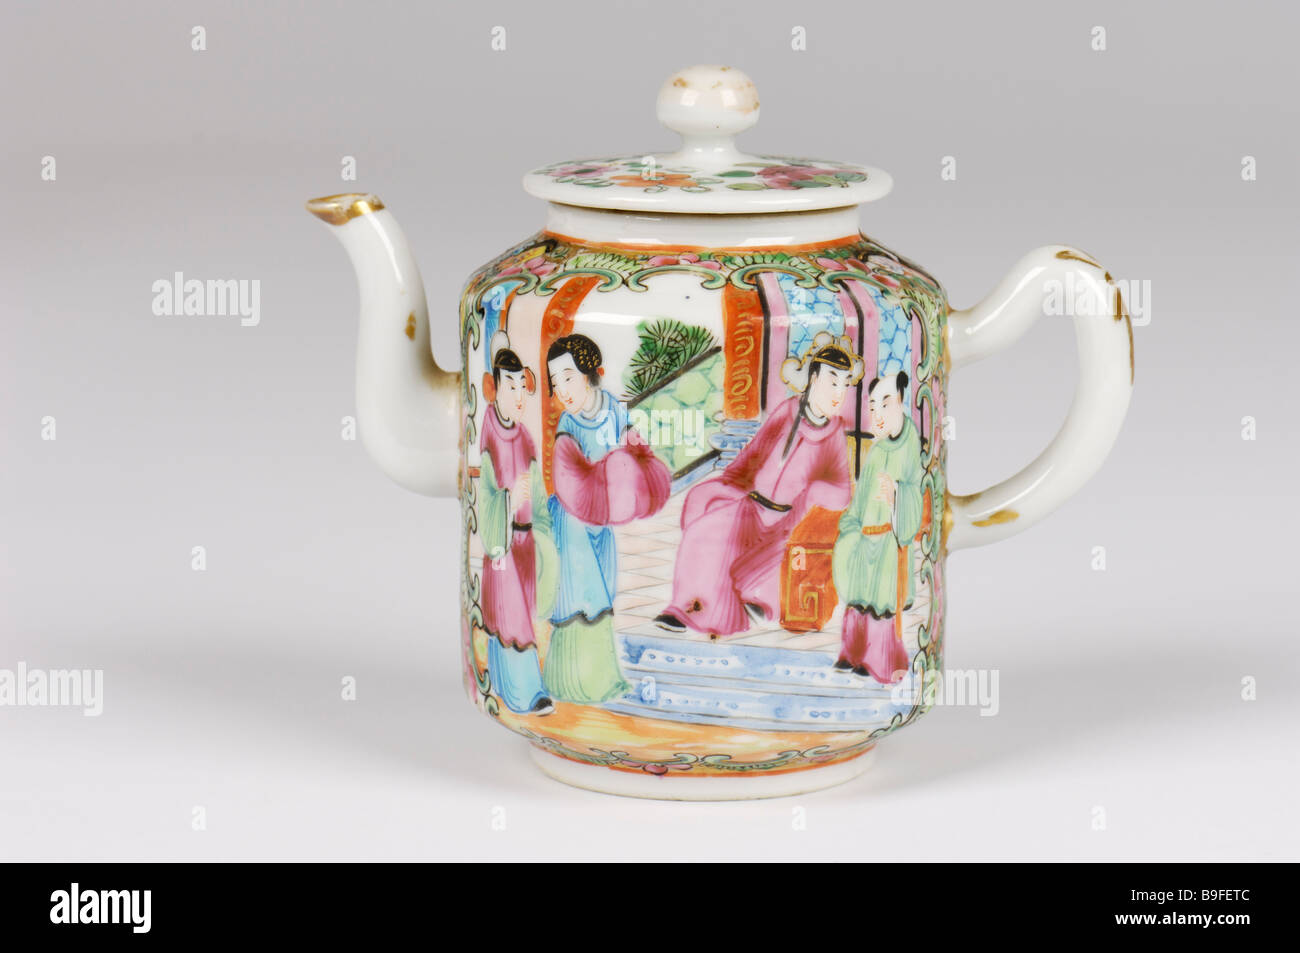 Eine handgemalte antikes chinesisches Porzellan Tee oder Wein Topf mit Vögel in helle Glasuren dekoriert. Wahrscheinlich Anfang 19. Jh. Stockfoto